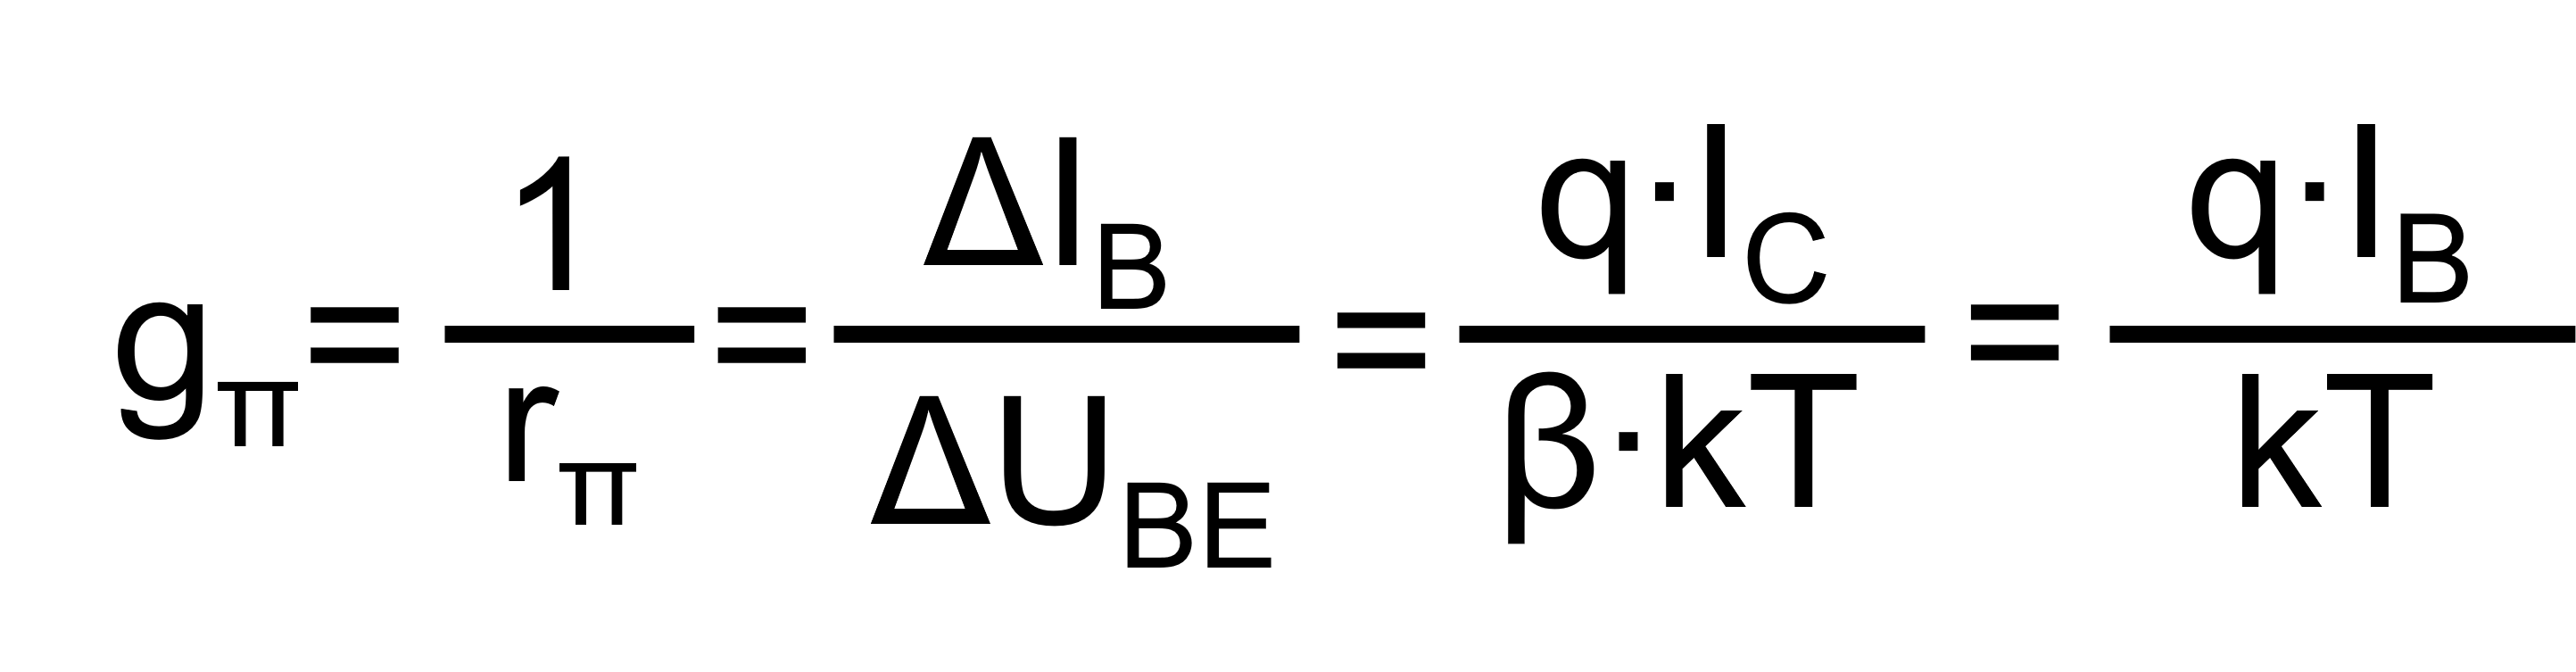 Das Bild zeigt die Formel zur Berechnung des Eingangsleitwert im Kleinsignal-Ersatzschaltbild des Bipolartranistor